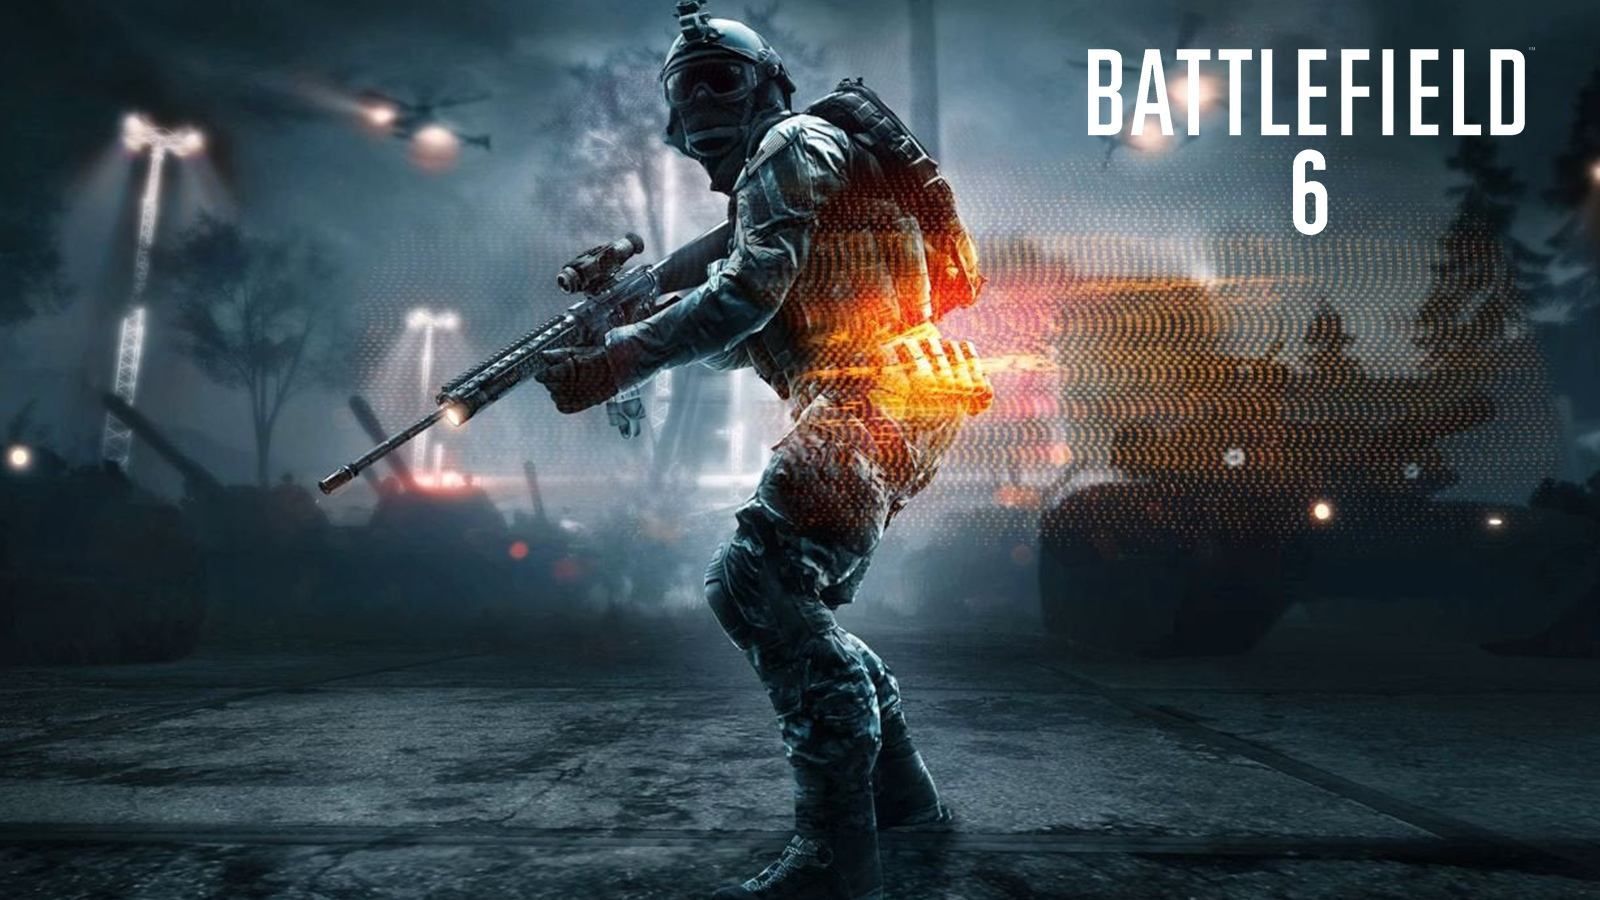 Le trailer de Battlefield 6 aurait subi un changement total - Dexerto.fr